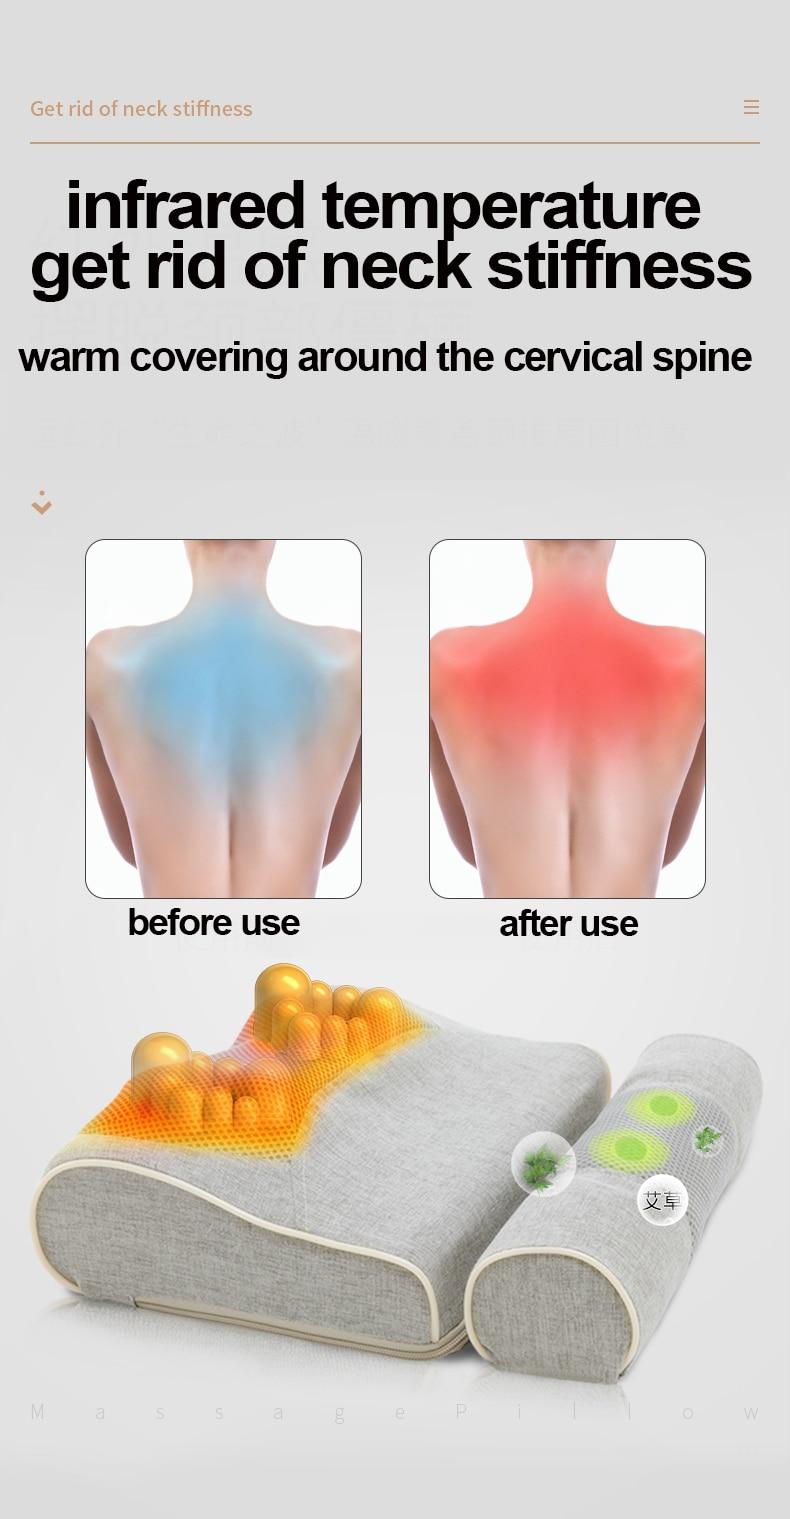 2 In 1 Massage Pillow Neck Back Shoulder Waist Body Electric Vibrating Cervical Spine Massager Gift